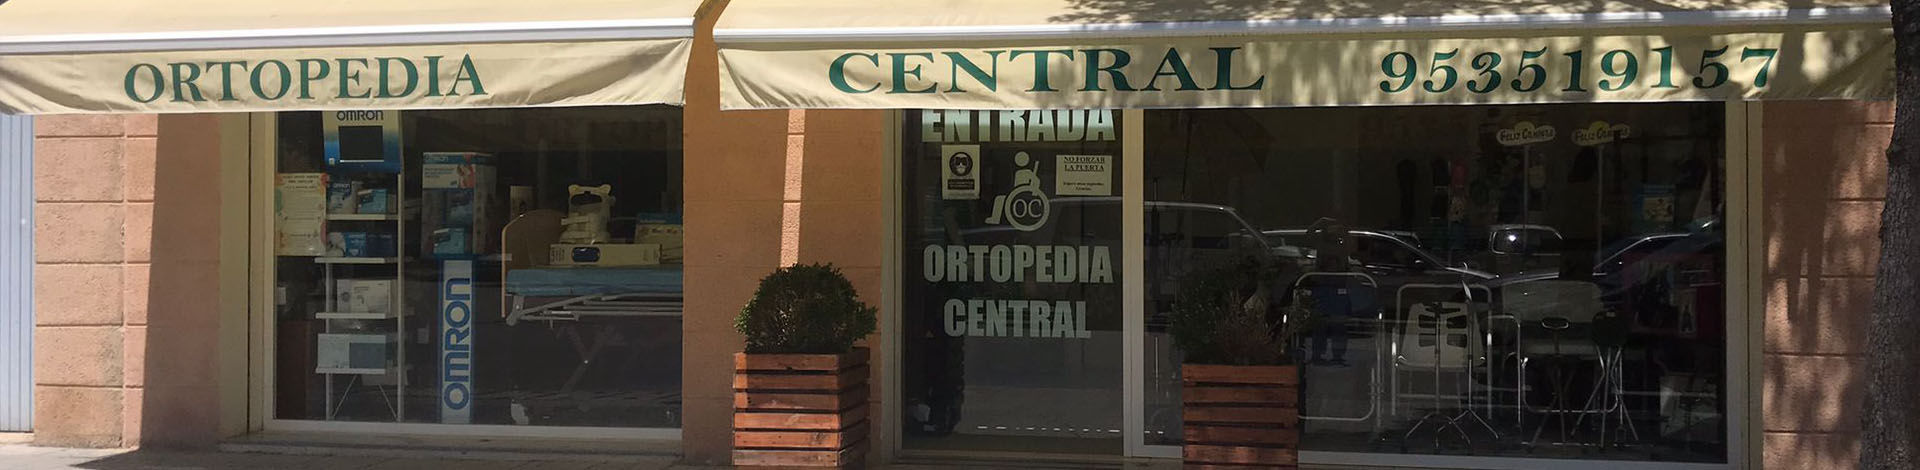 Ortopedia Central